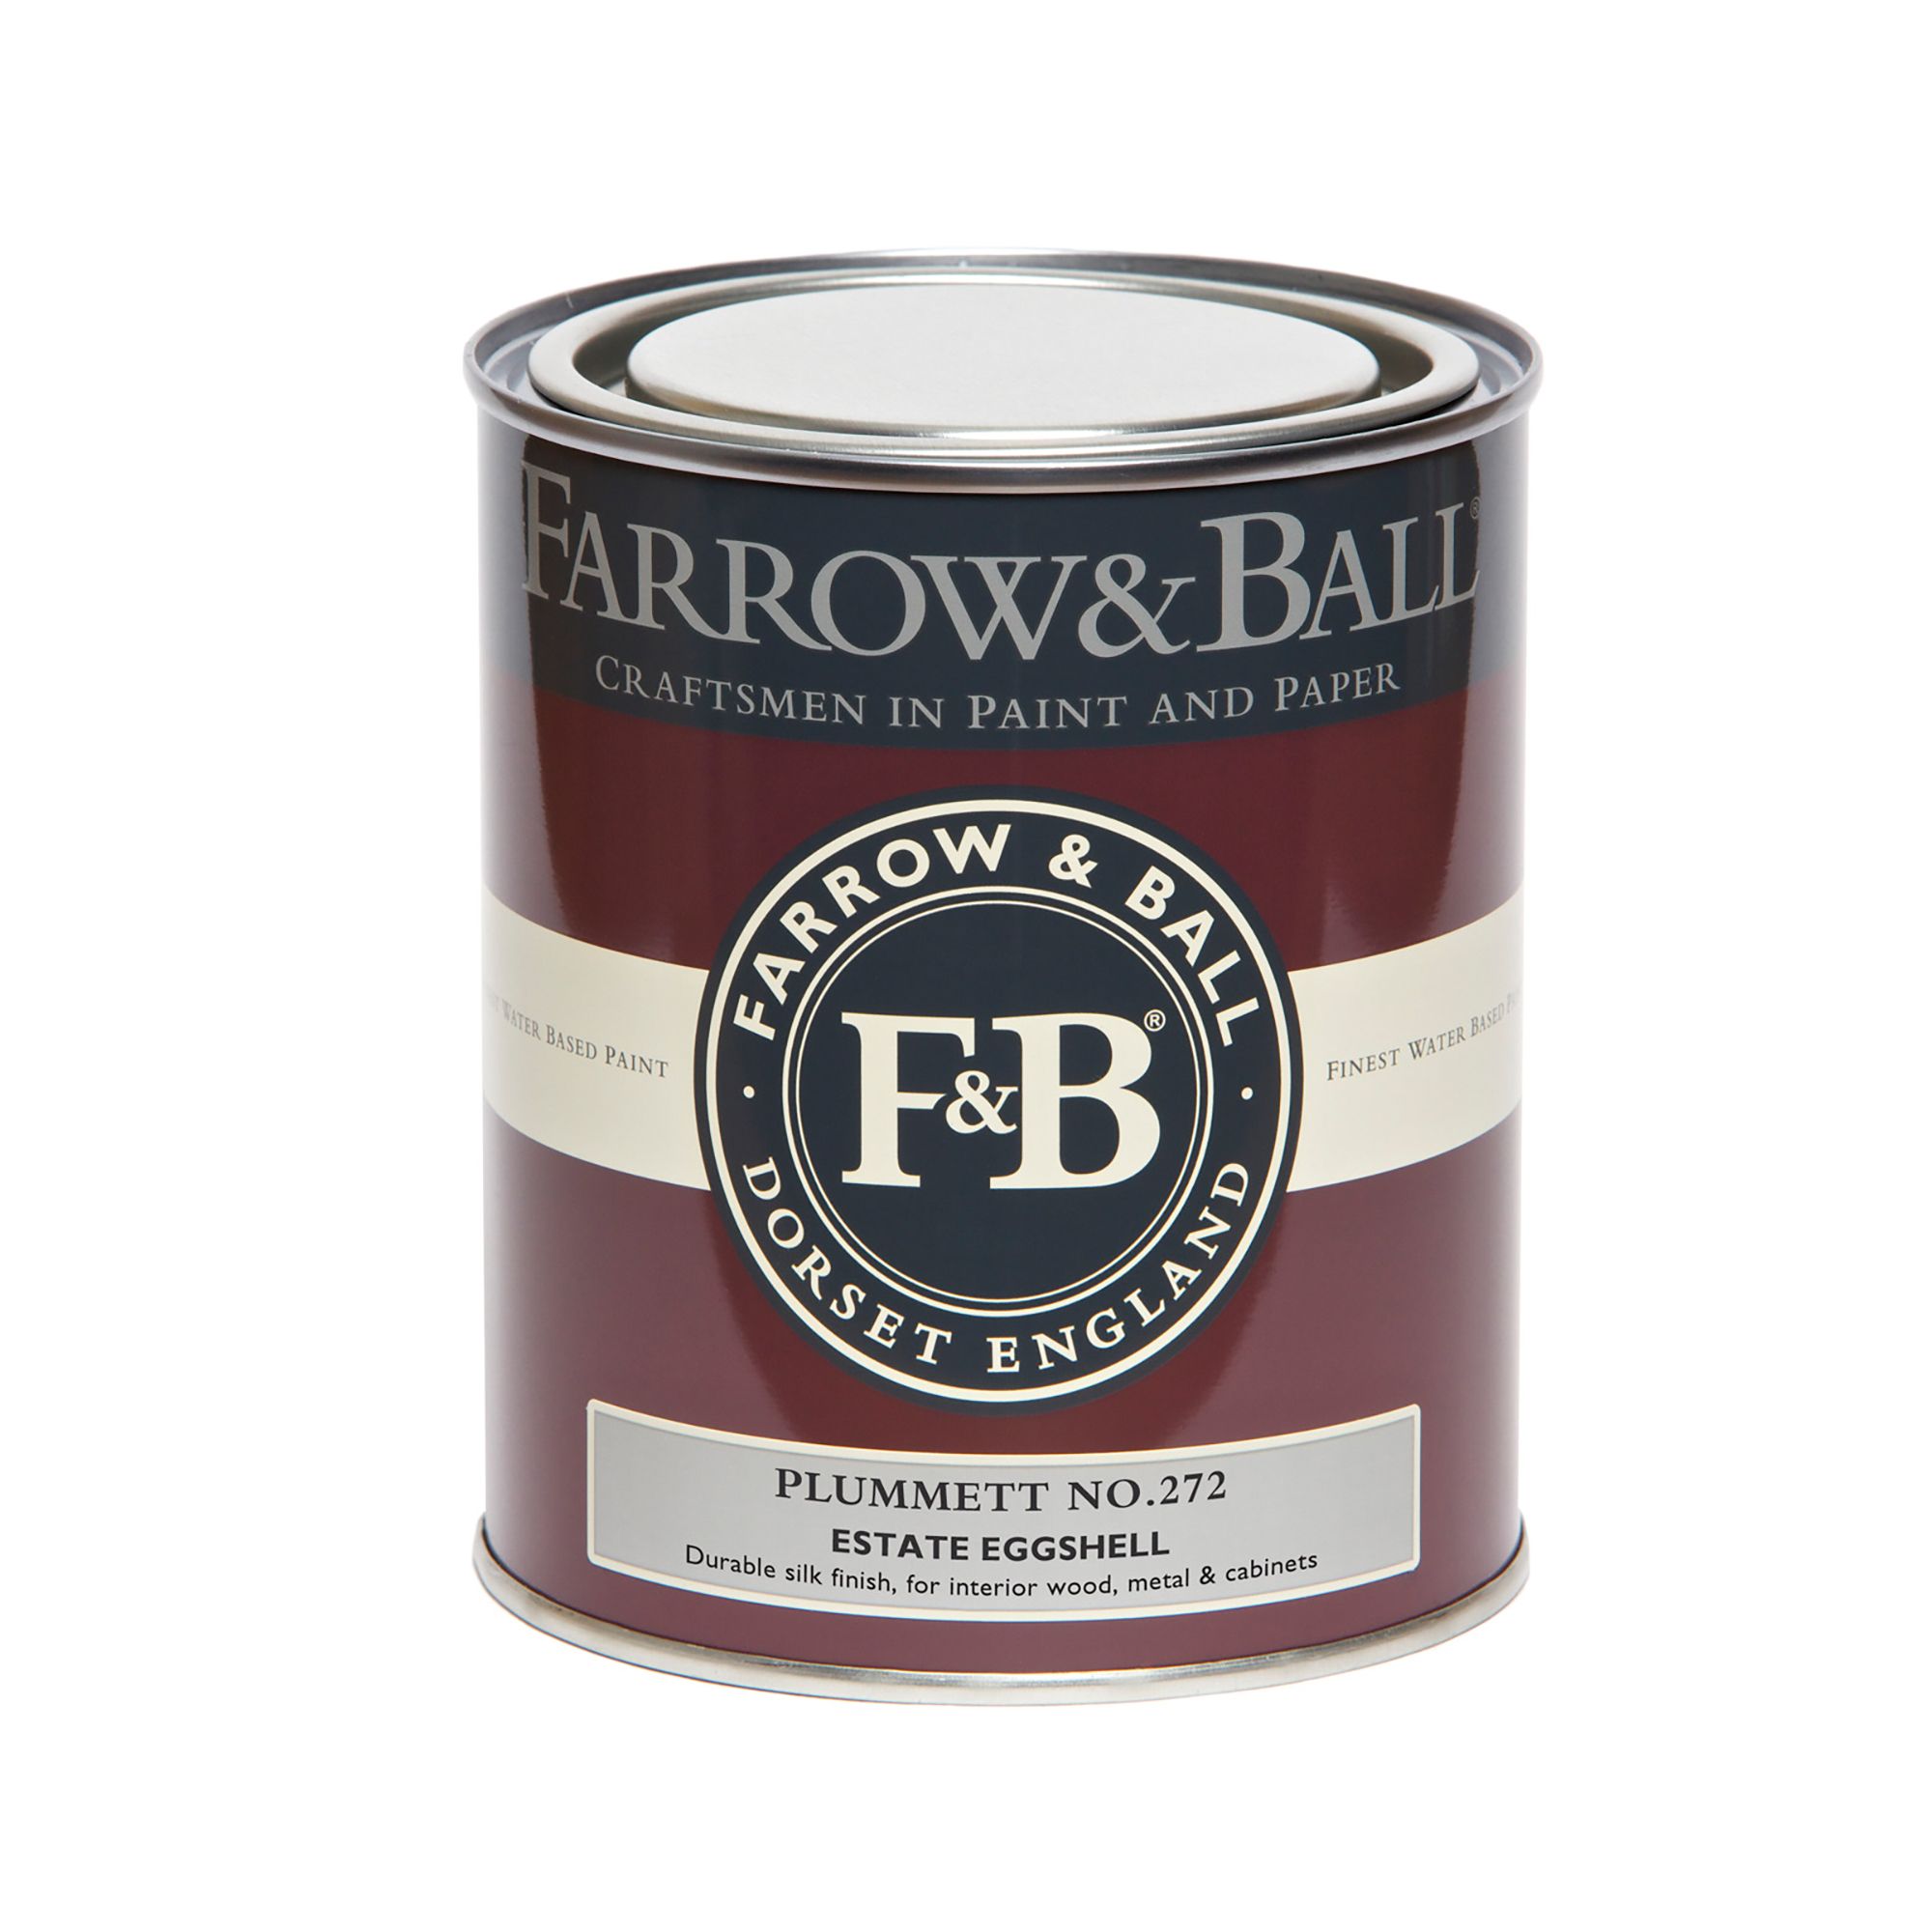 Farrow & Ball Estate Plummett No.272 Eggshell Paint, 750ml